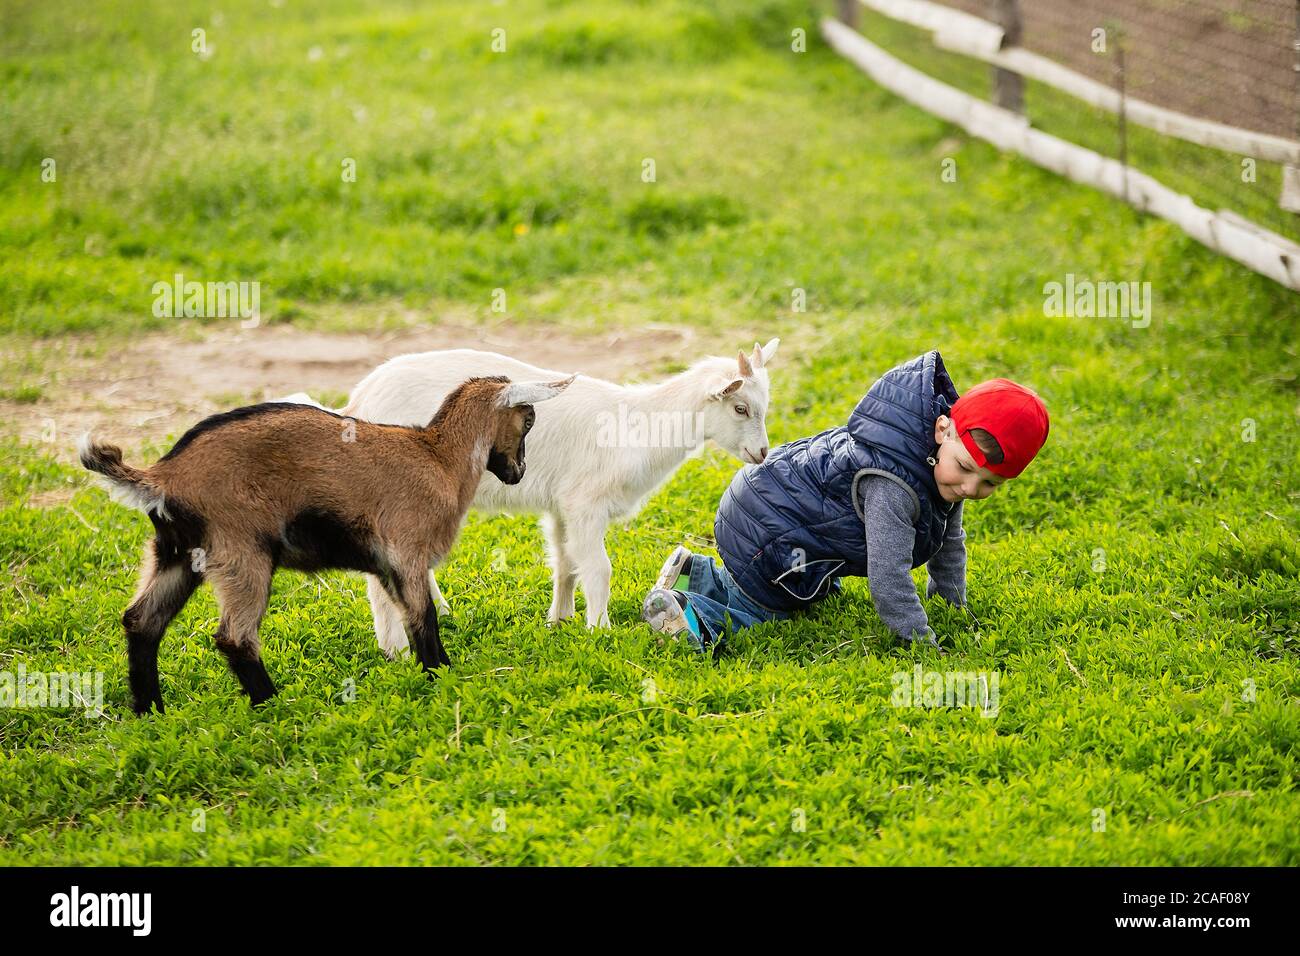 i bambini giocano con il ragazzo, due animali corrono al bambino, riposano nel villaggio, l'infanzia in fattoria Foto Stock